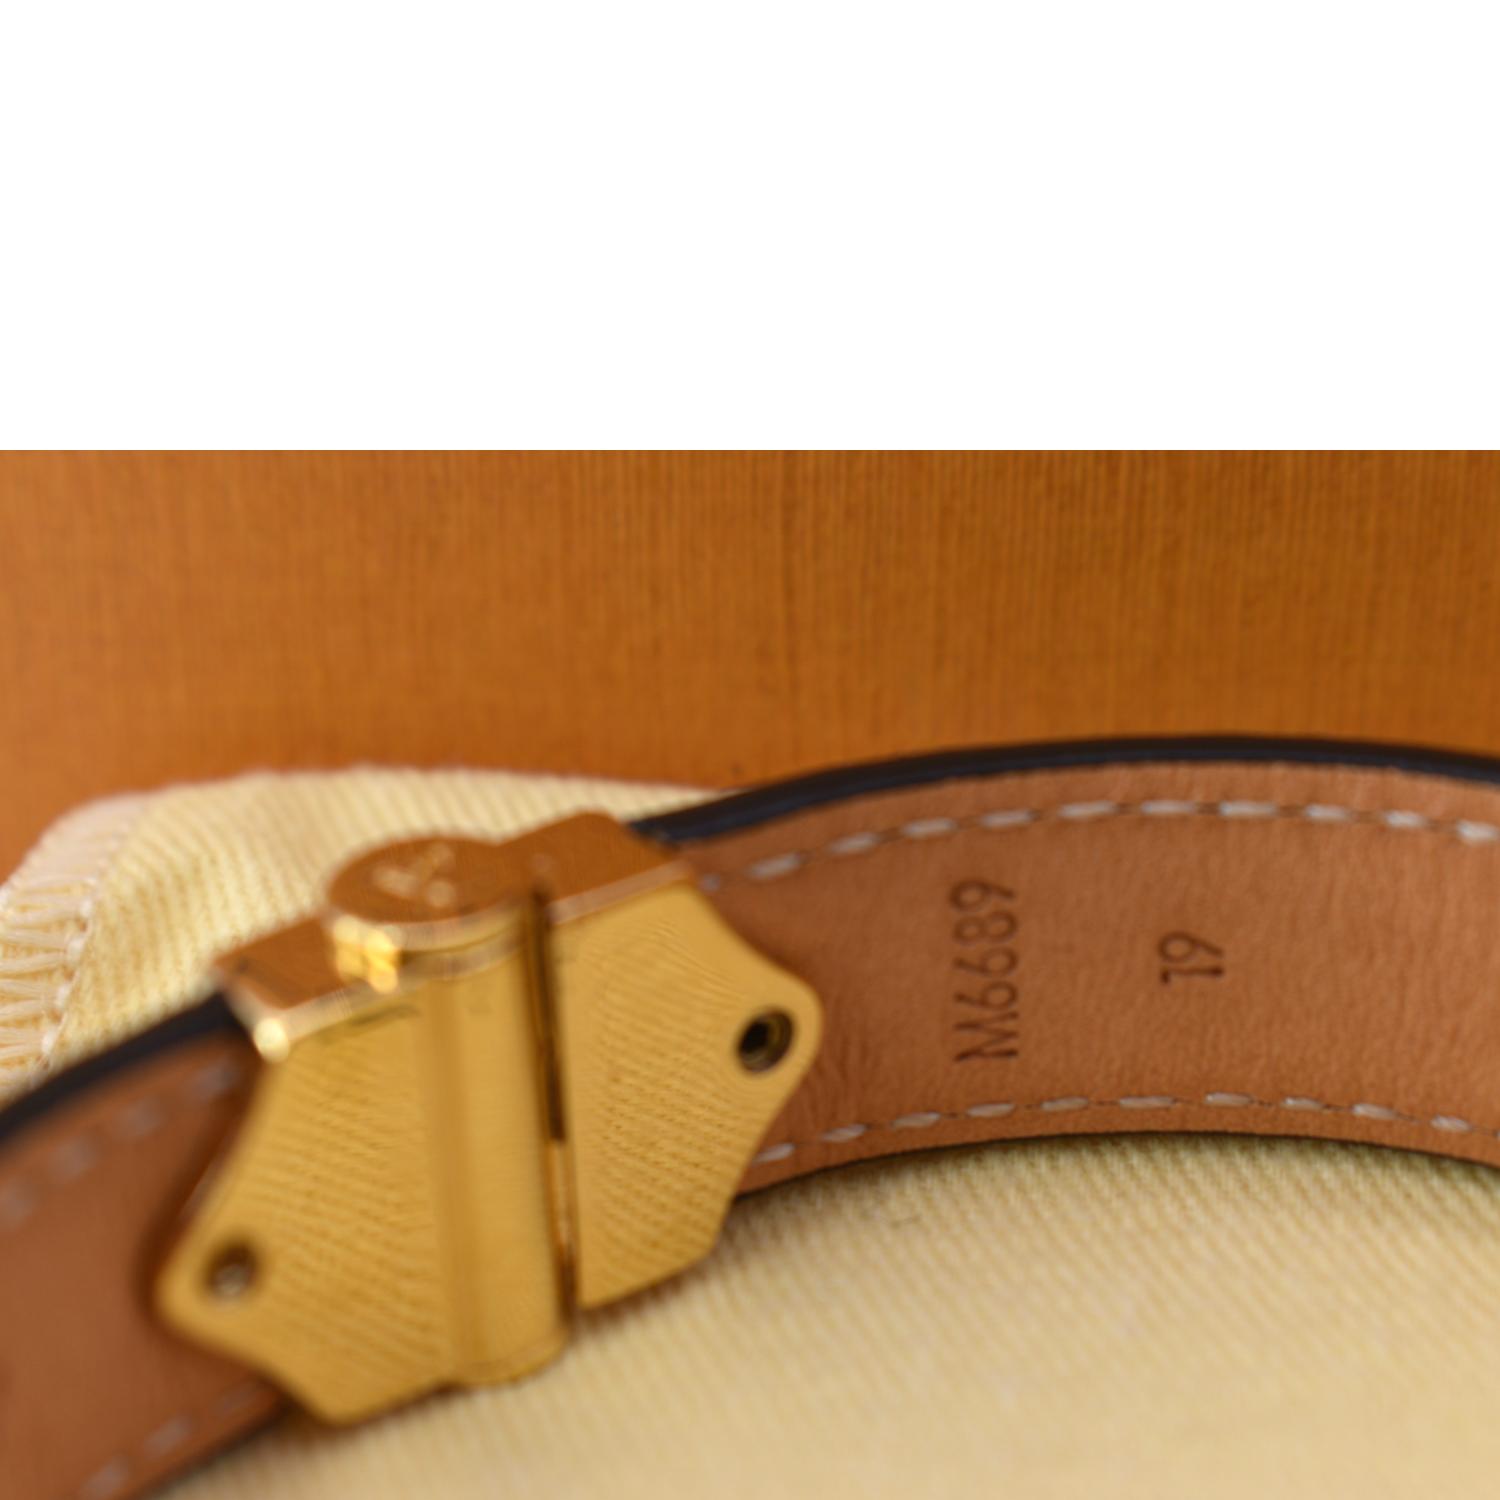 Louis Vuitton Nano Bracelet - Good or Bag